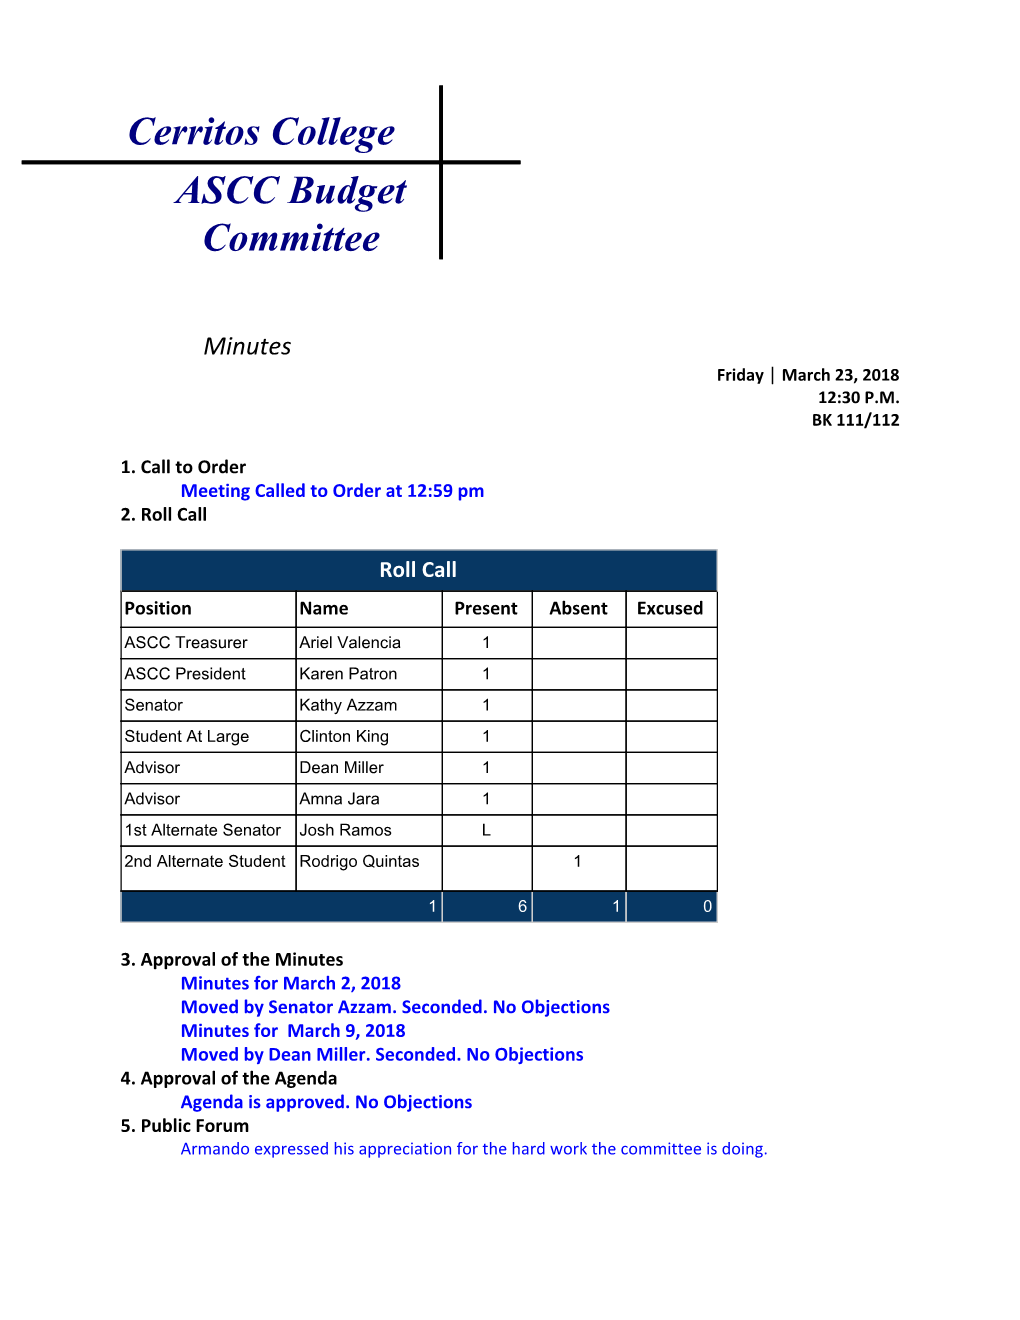 Cerritos College ASCC Budget Committee